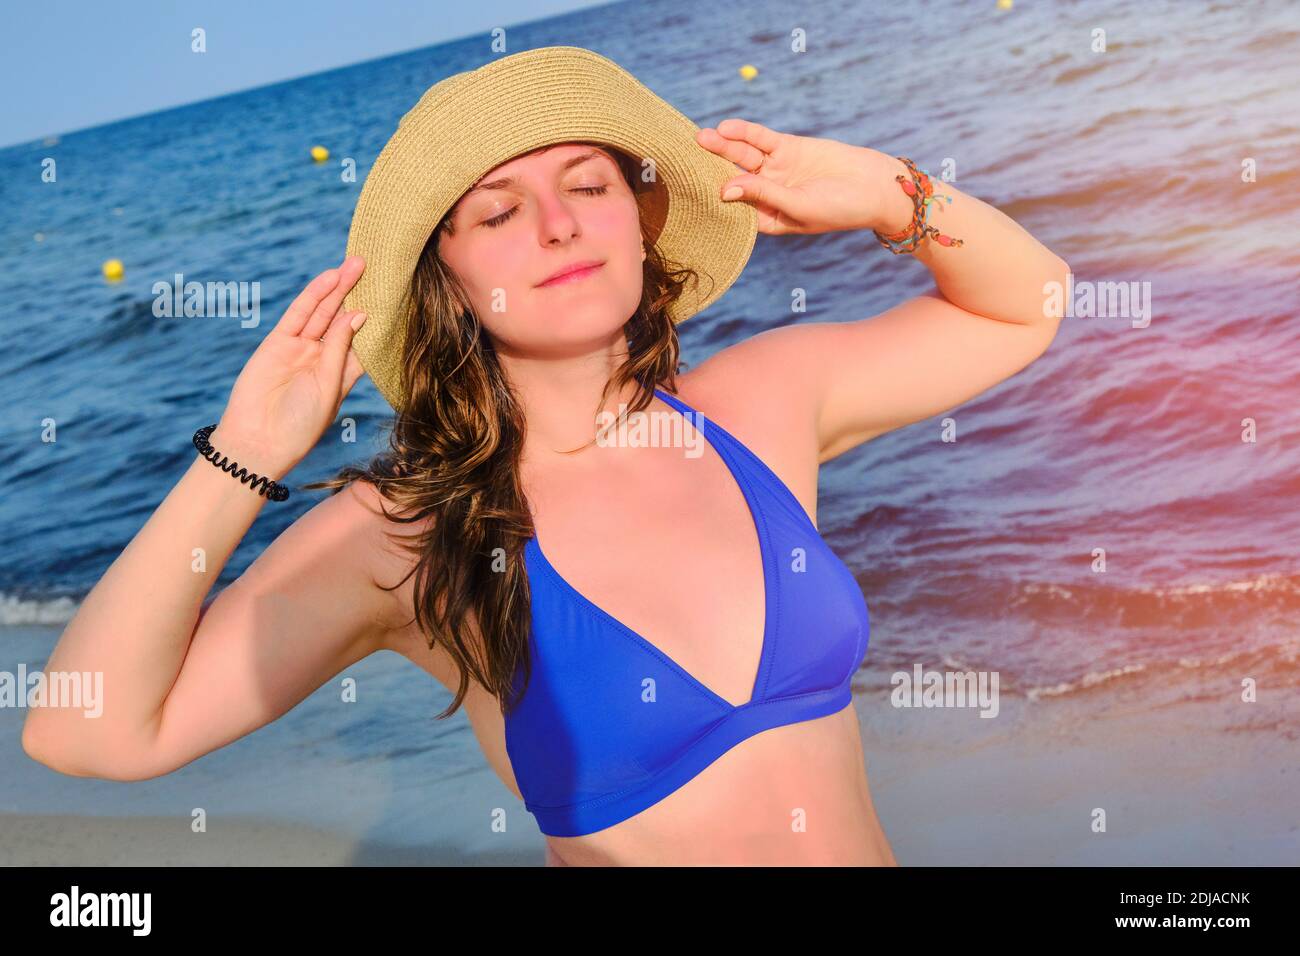 Eine junge Frau in einem Strohhut drehte ihr Gesicht Zur Sonne gegen das  Meer Stockfotografie - Alamy